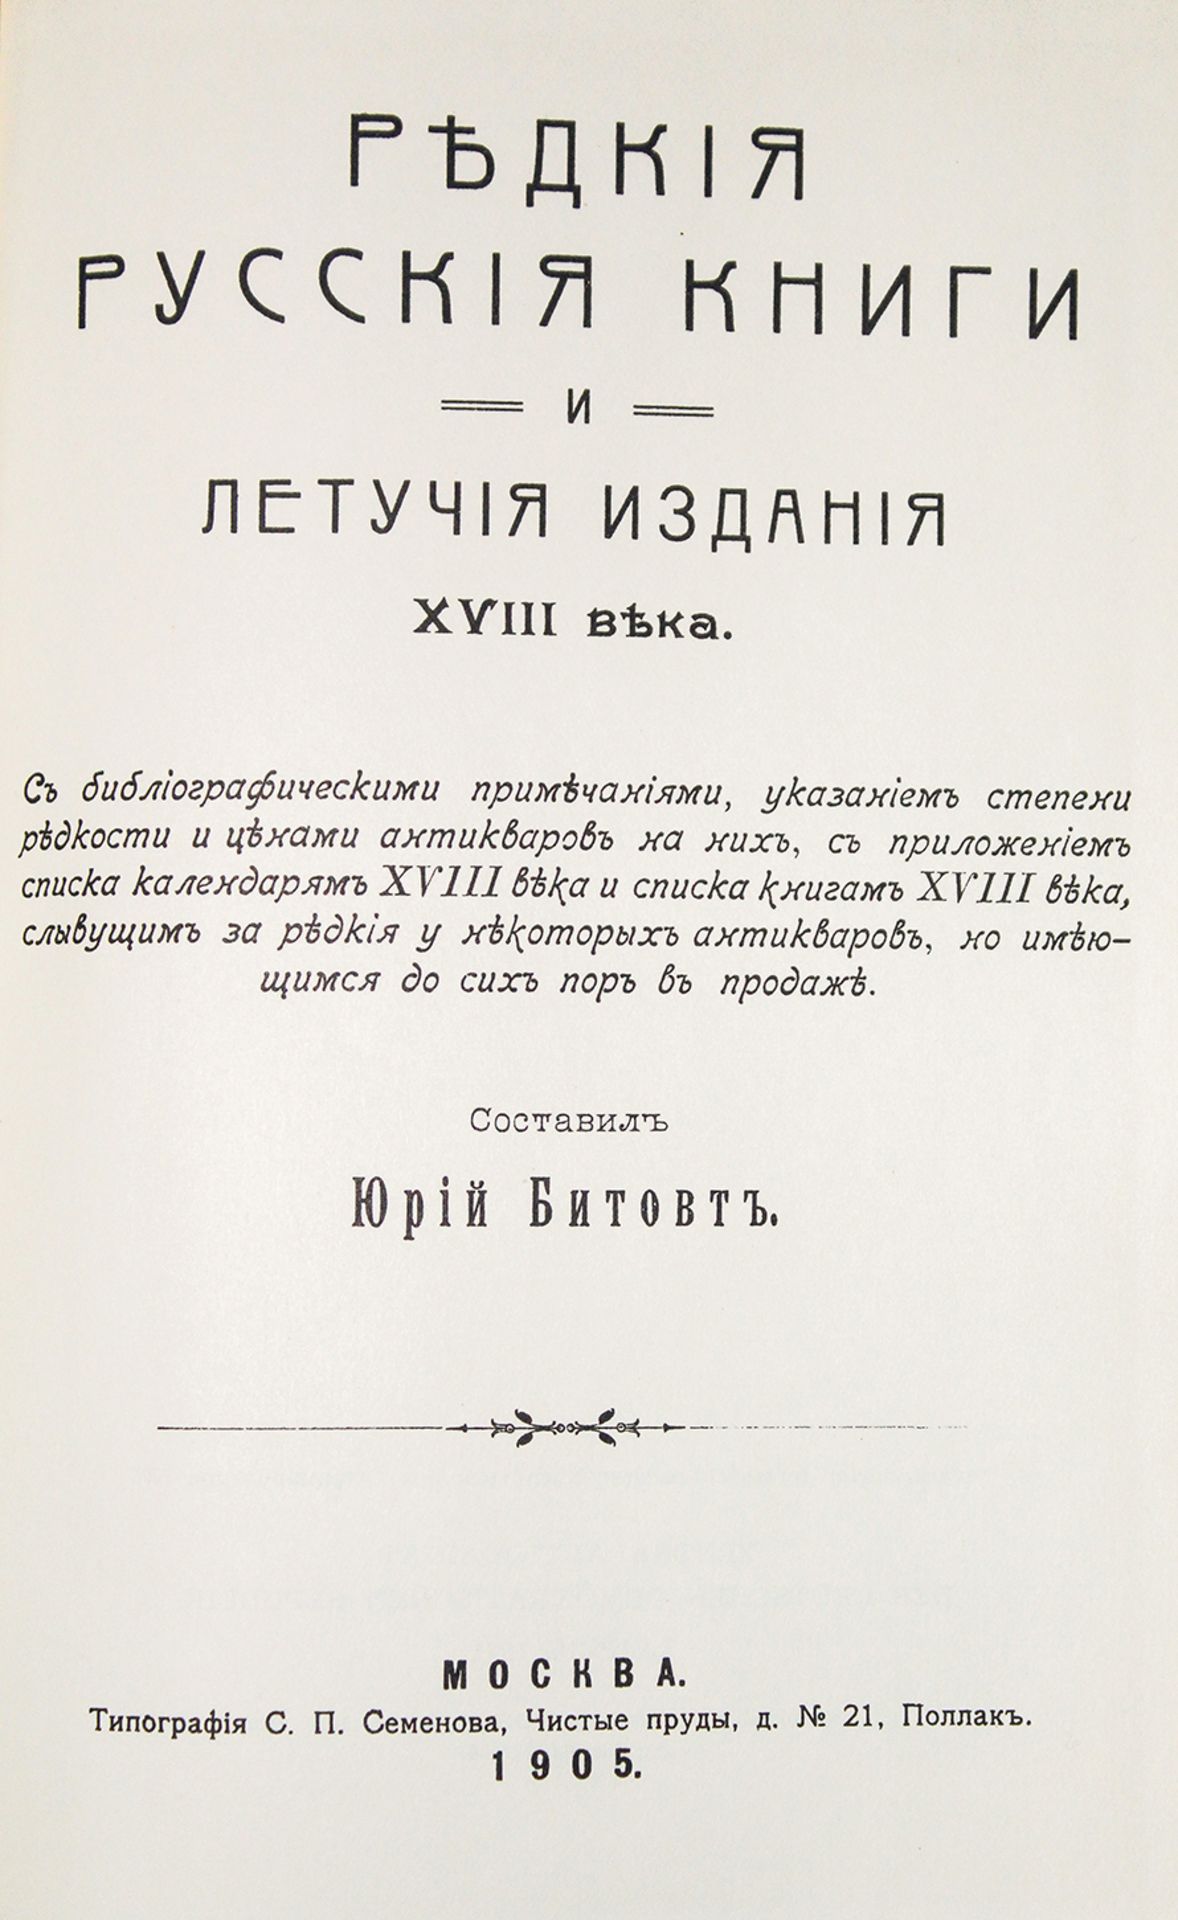 BITOVT, Yuri. Rare Russian books and ephemera of the XVIII century. - Reprint of [...]